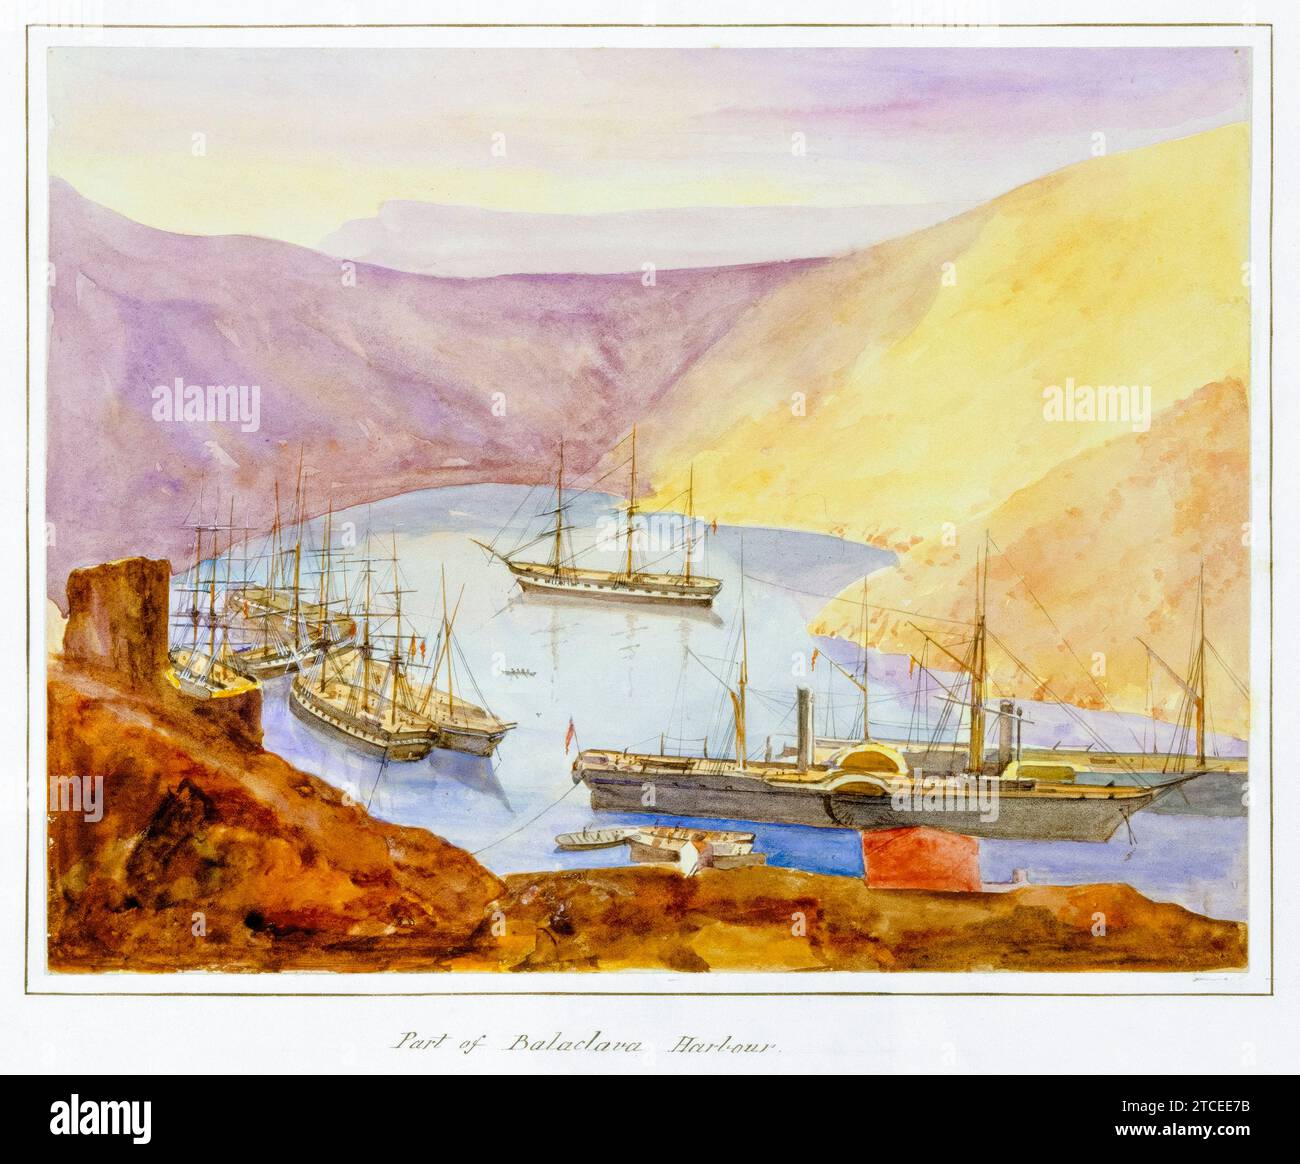 Porto di Balaclava Harbour, dalla serie "Crimea", stampa fotografica di albumi colorata a mano di James Robertson, 1855 Foto Stock